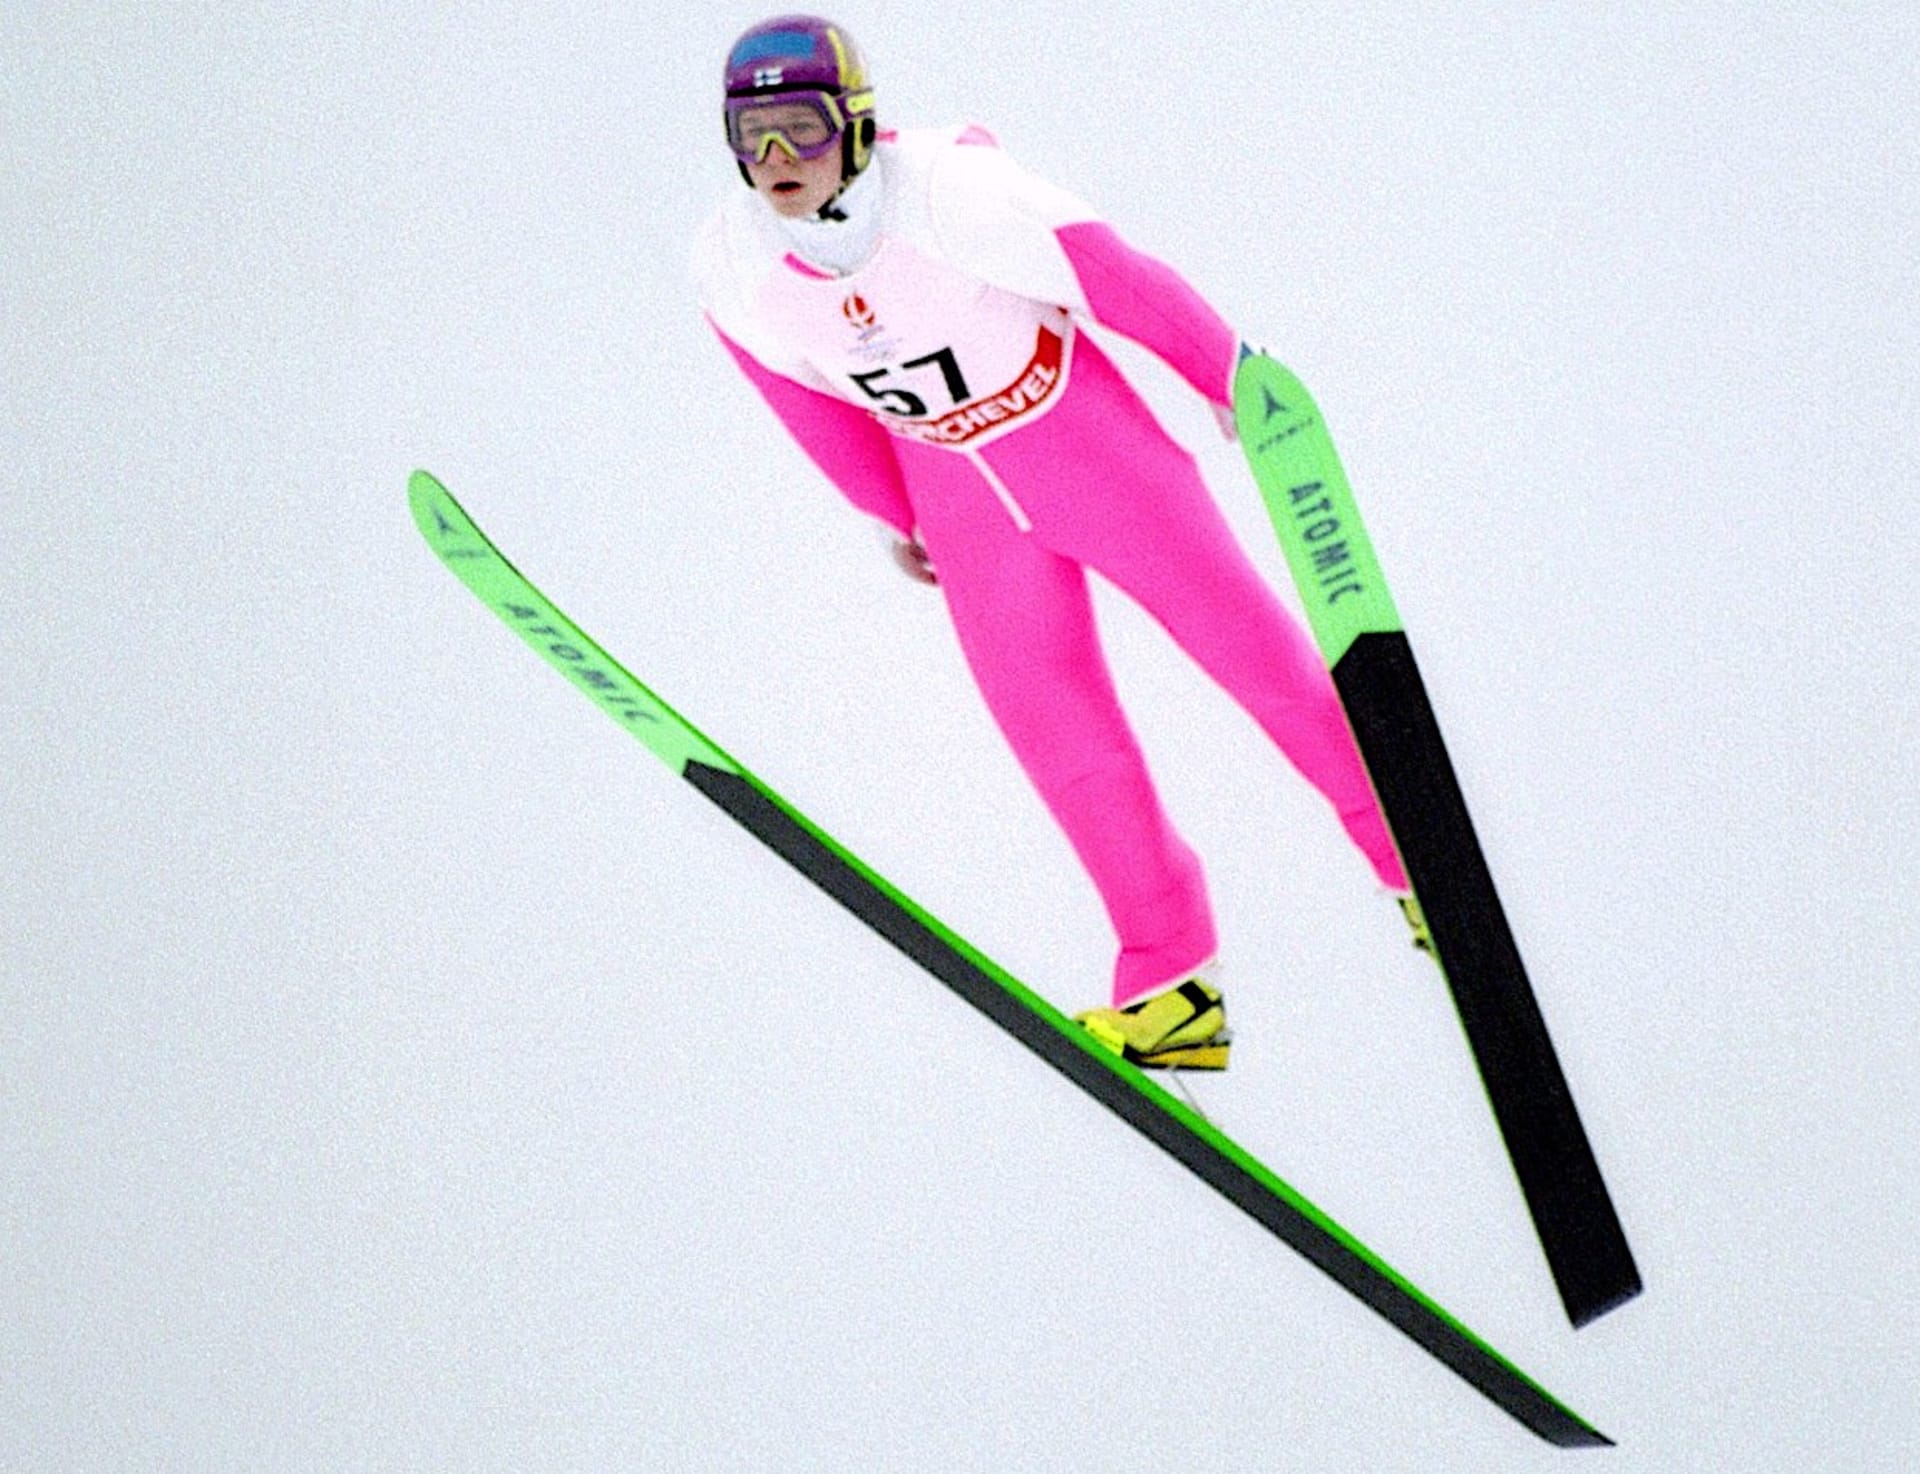 Finský skokan na lyžích Toni Nieminen získal ve svých 16 letech na olympijských hrách 1992 v Albertville dvě zlaté medaile a jednu bronzovou. 